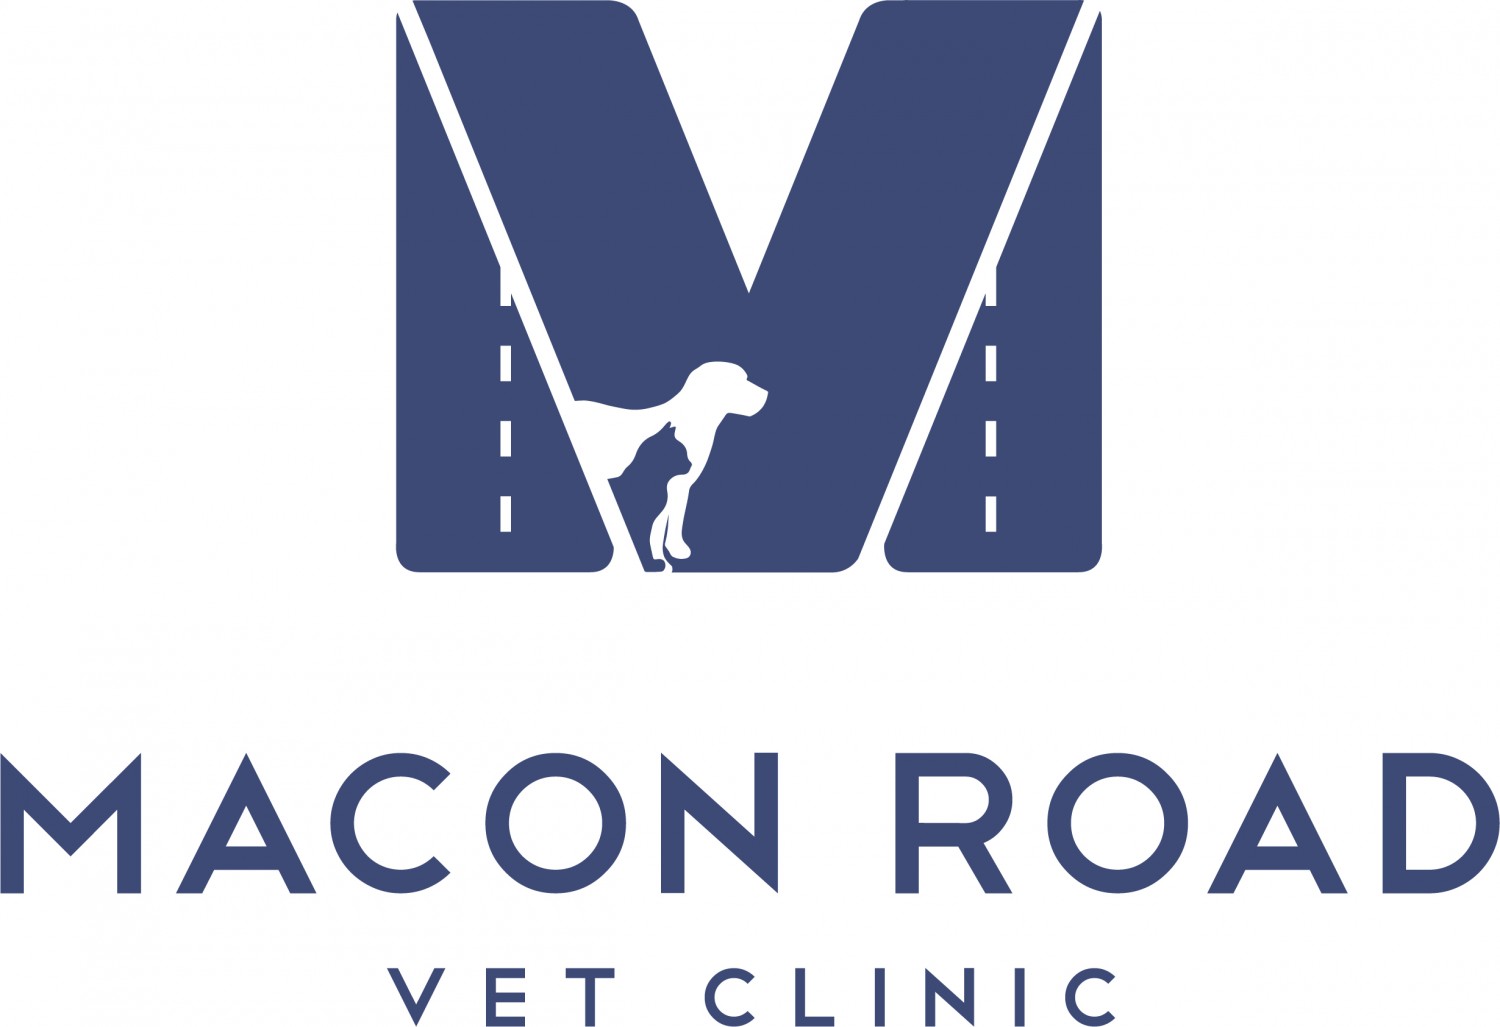 Macon Road Veterinary Clinic, Columbus, GA - Home